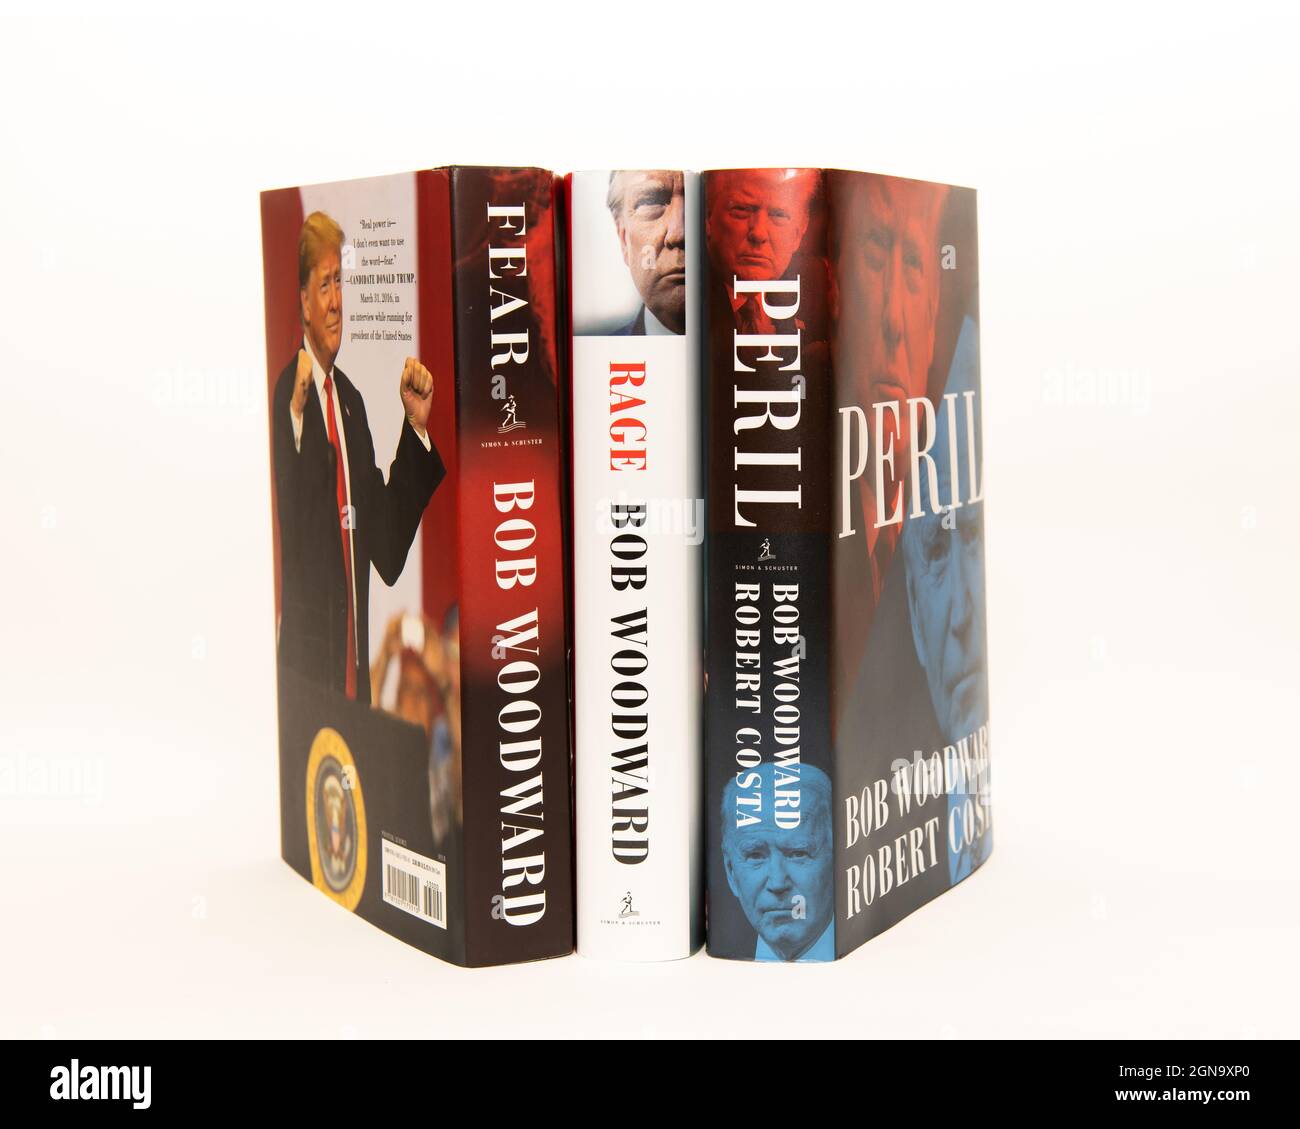 Peril, ein Buch von Bob Woodward und Robert Costa, und Fear and Rage, Bücher von Bob Woodward über die Trump-Präsidentschaft Stockfoto